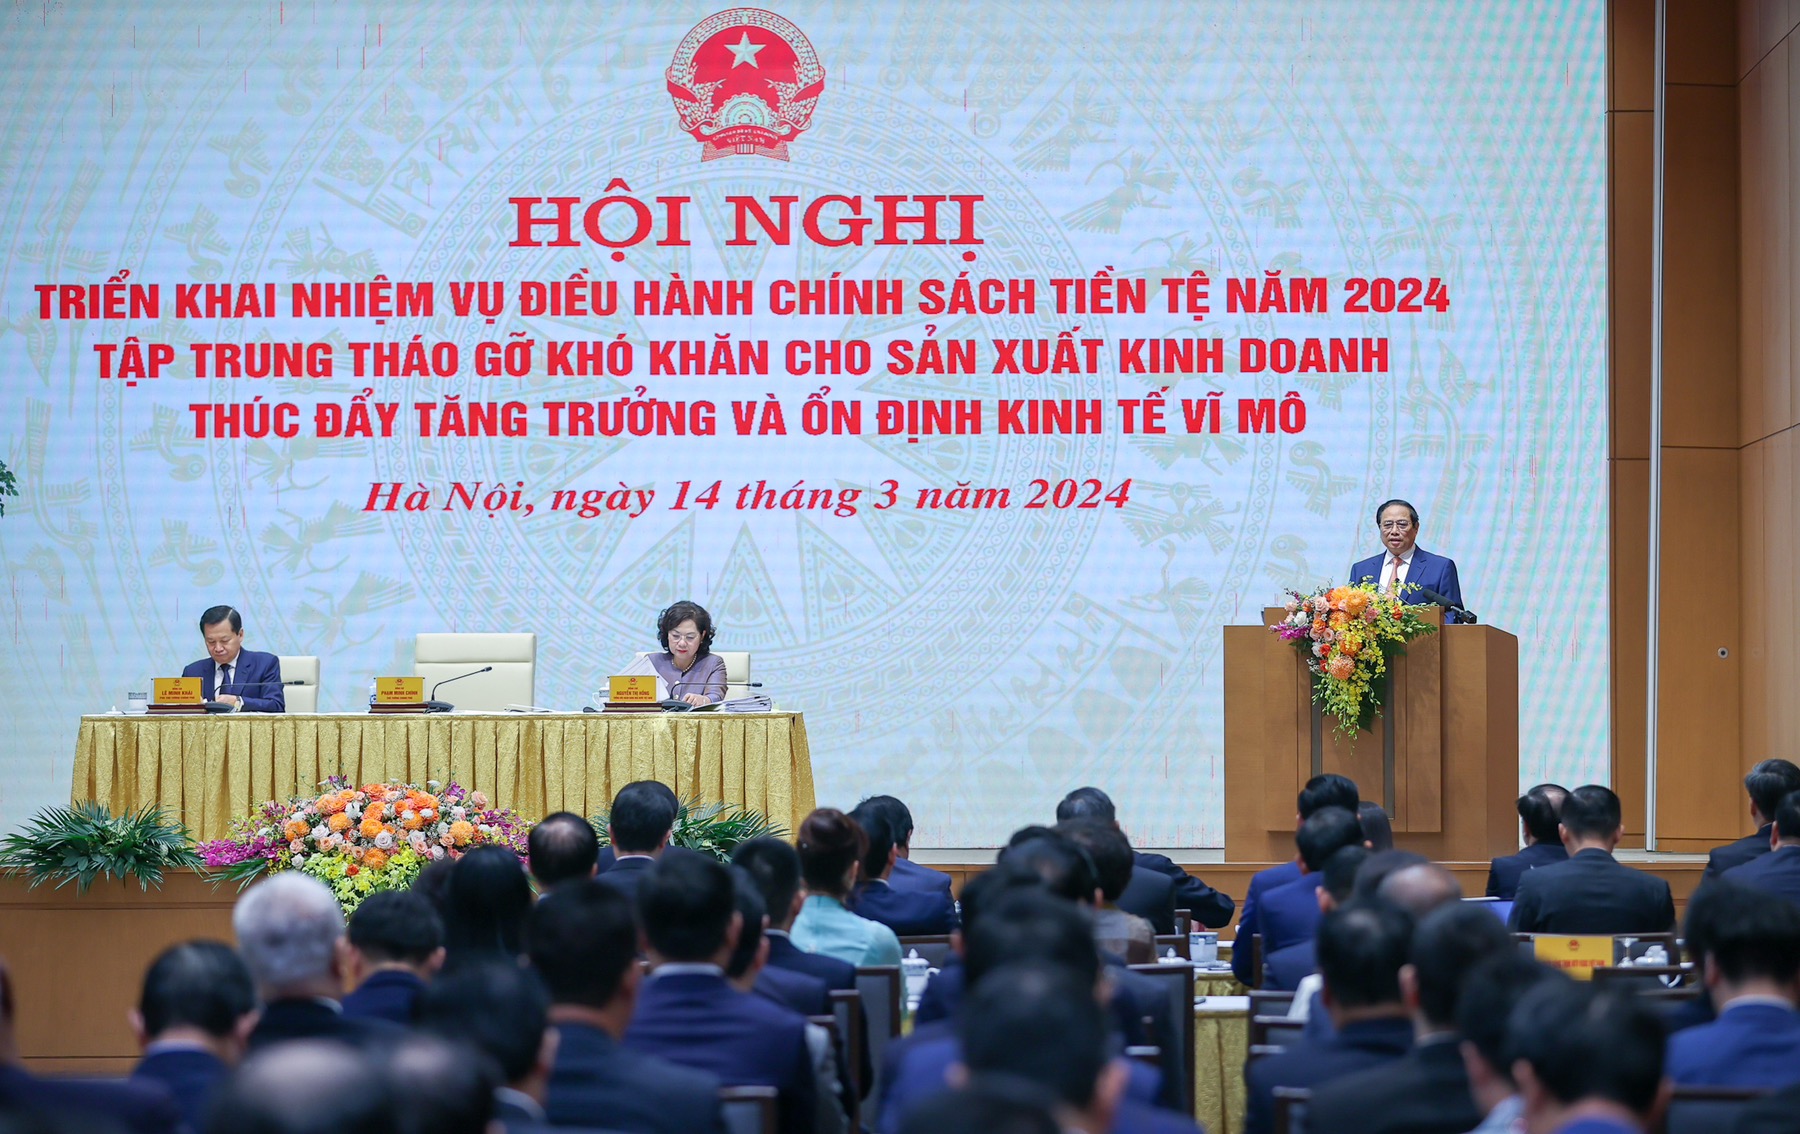 Thủ tướng Chính phủ Phạm Minh Chính phát biểu tại Hội nghị triển khai nhiệm vụ điều hành chính sách tiền tệ năm 2024 tập trung tháo gỡ khó khăn cho sản xuất kinh doanh, thúc đẩy tăng trưởng và ổn định kinh tế vĩ mô